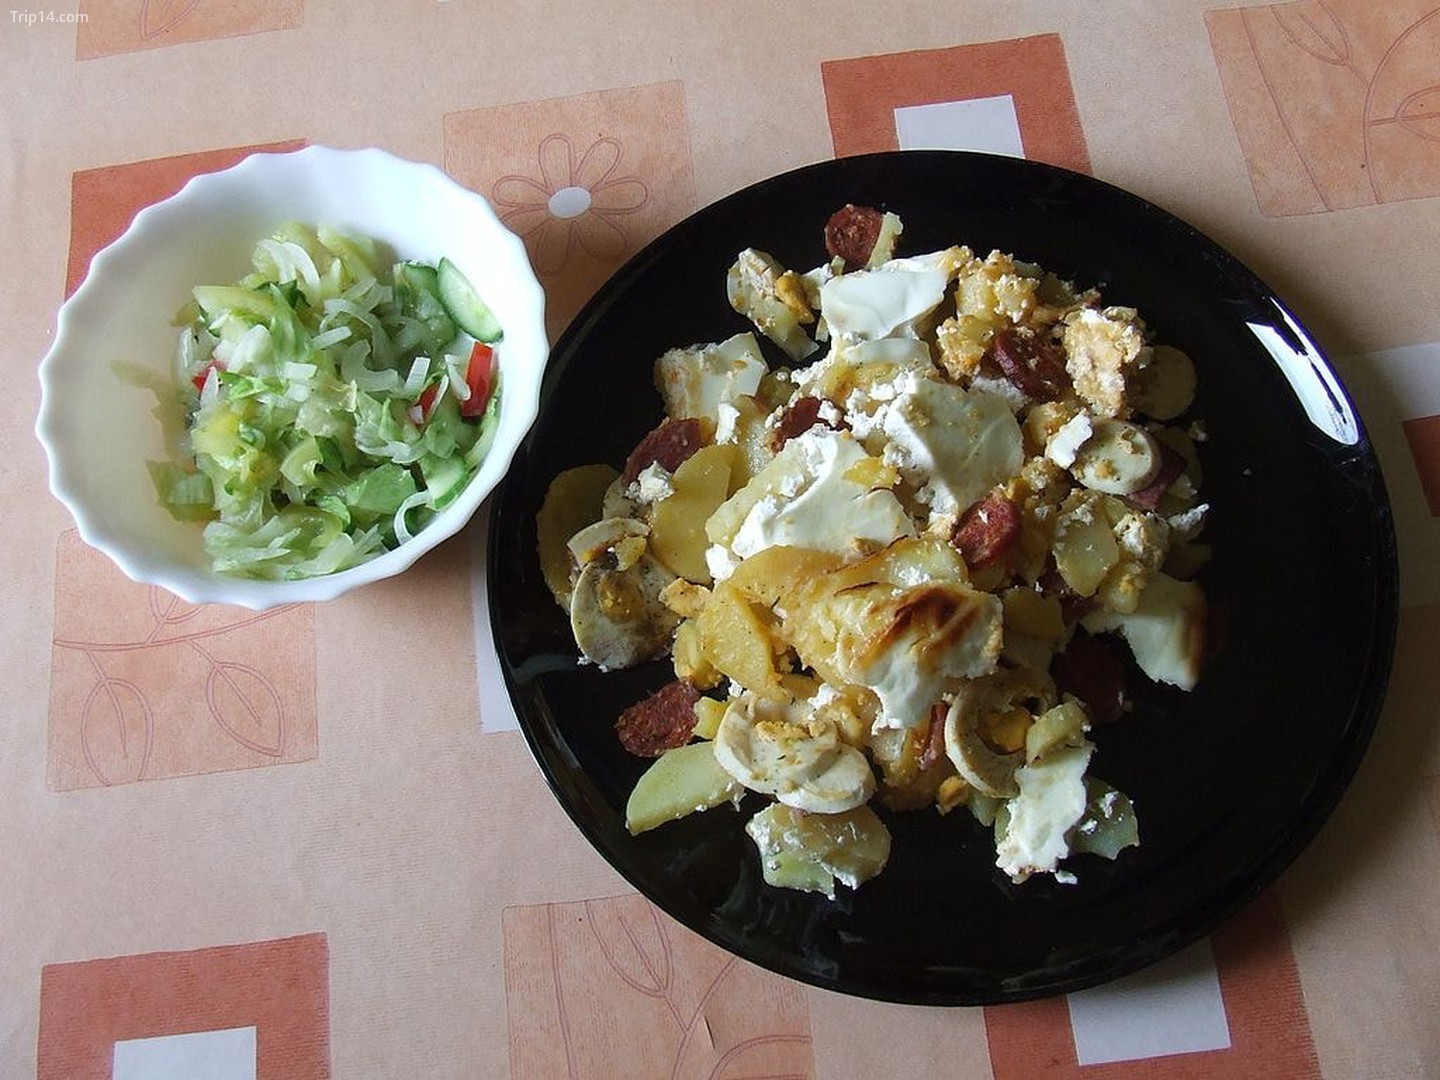  Khoai tây nhiều lớp kiểu Hungary với salad dưa chuột   |   